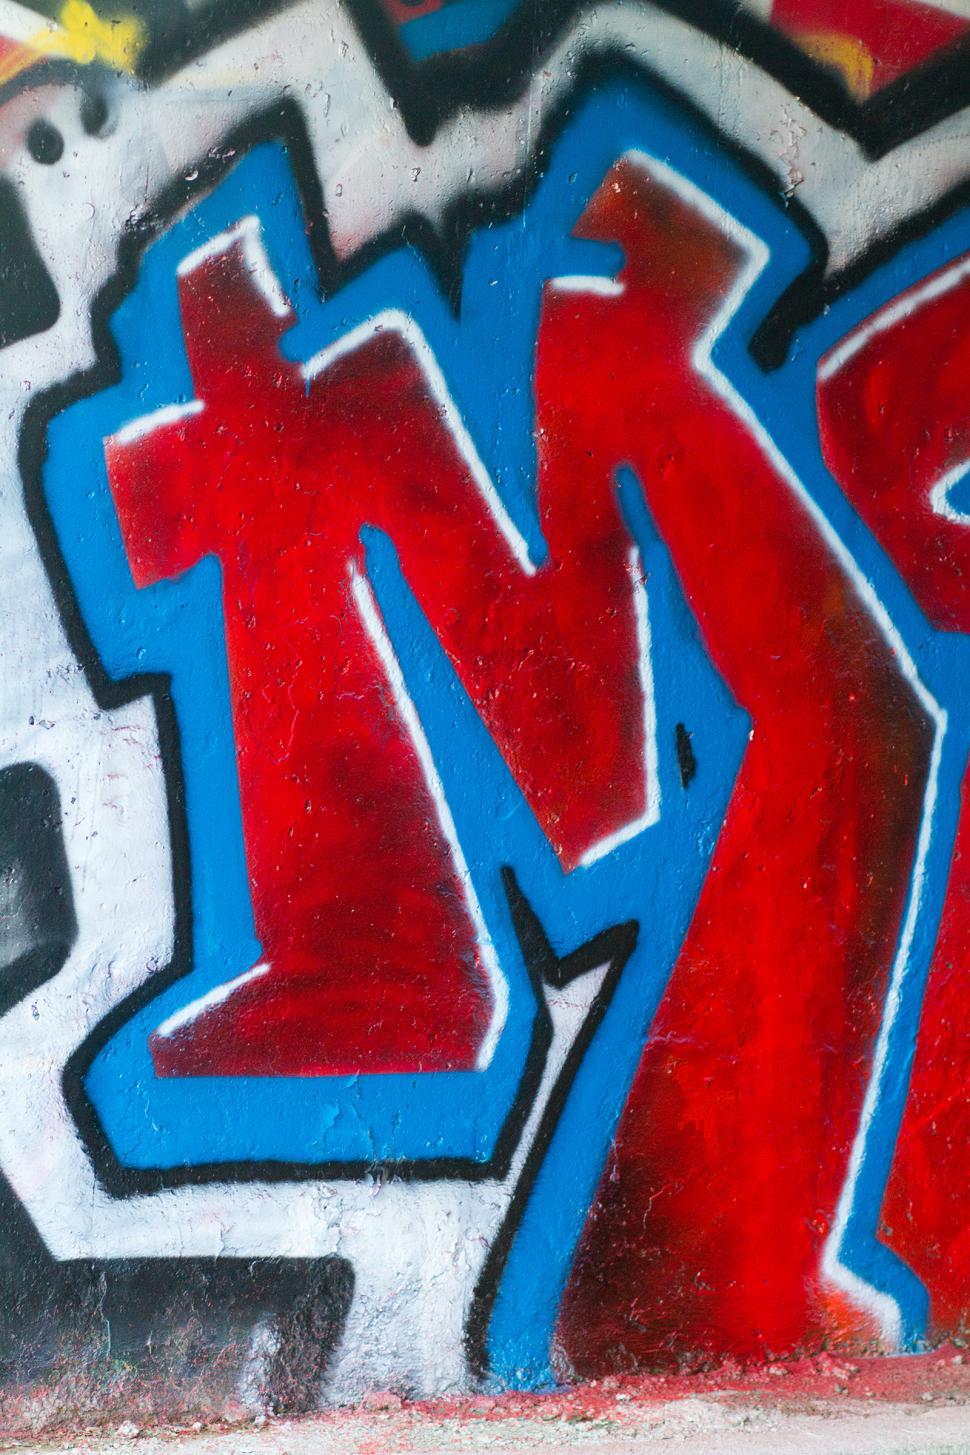 Free Image of Graffiti 